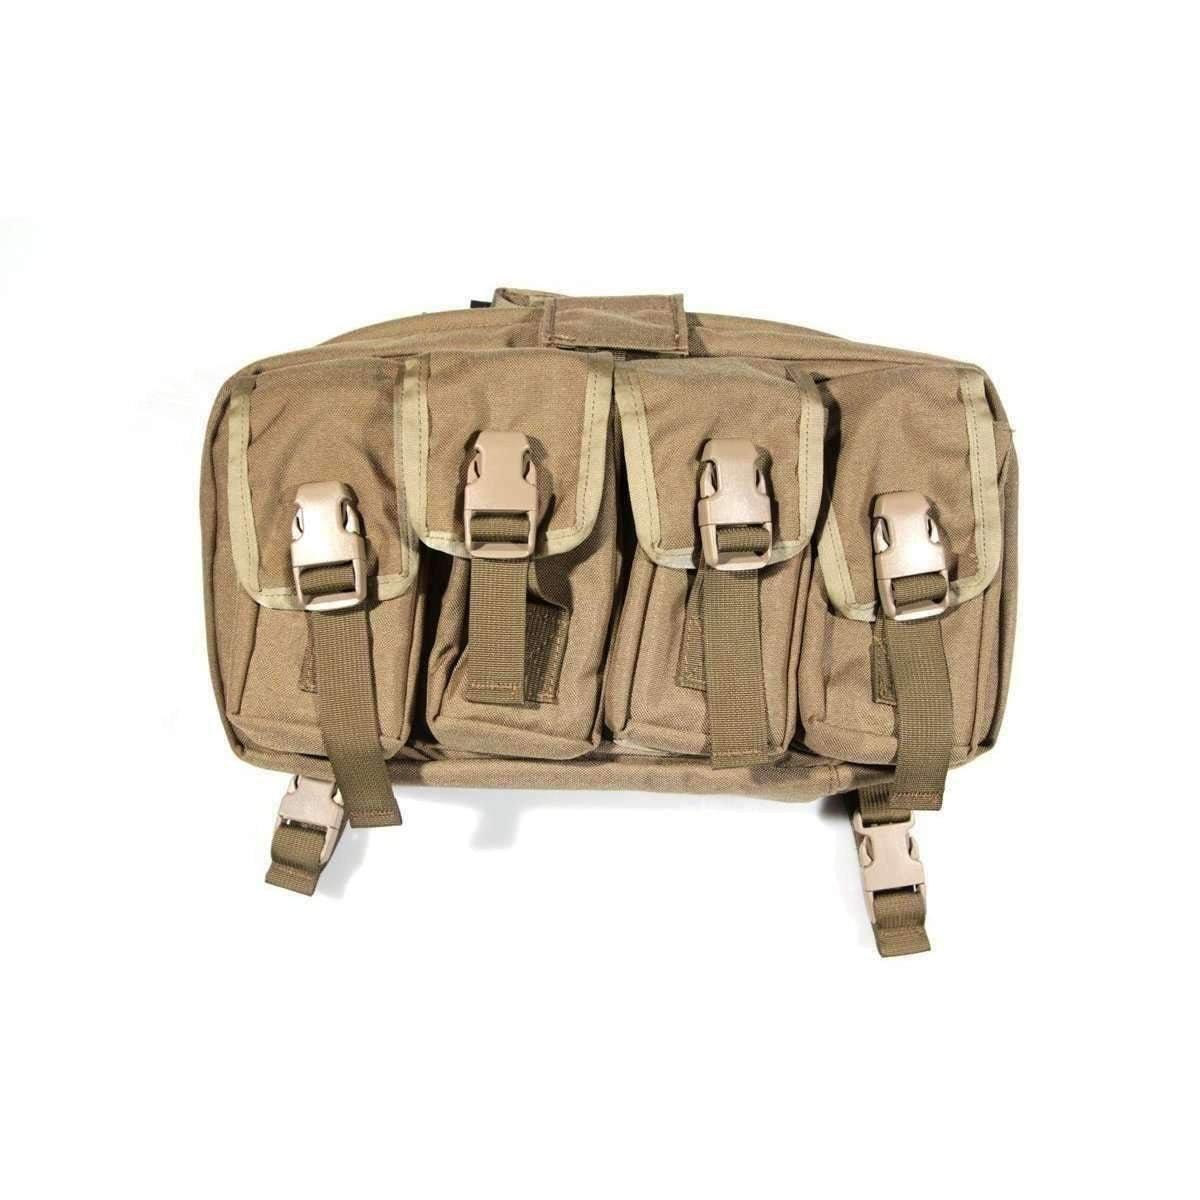 Skedco PRINGLE – WORKHORSE, Active Shooter Medical Chest Bag - Vendor